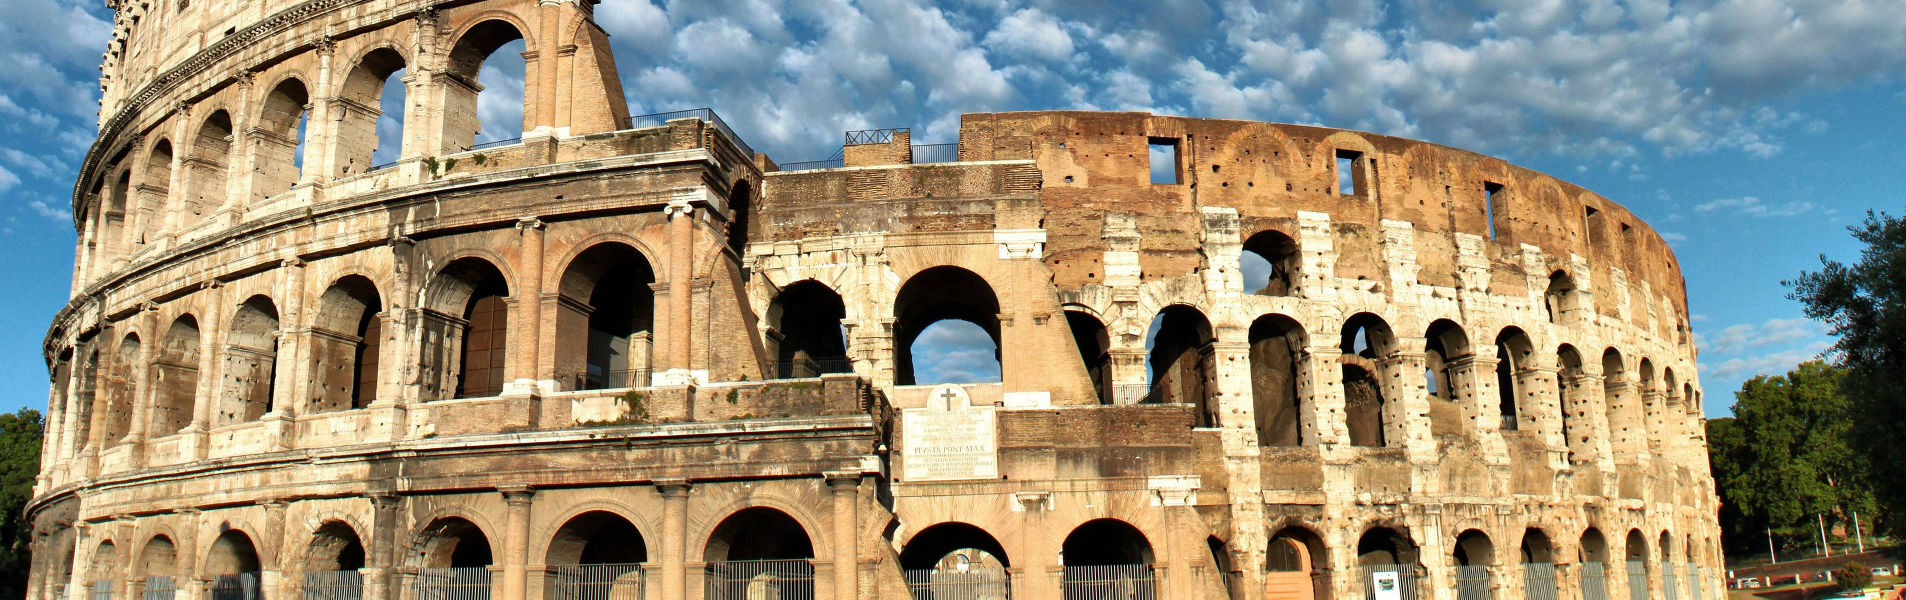 Il Colosseo, 2000 anni di storia nel cuore di Roma